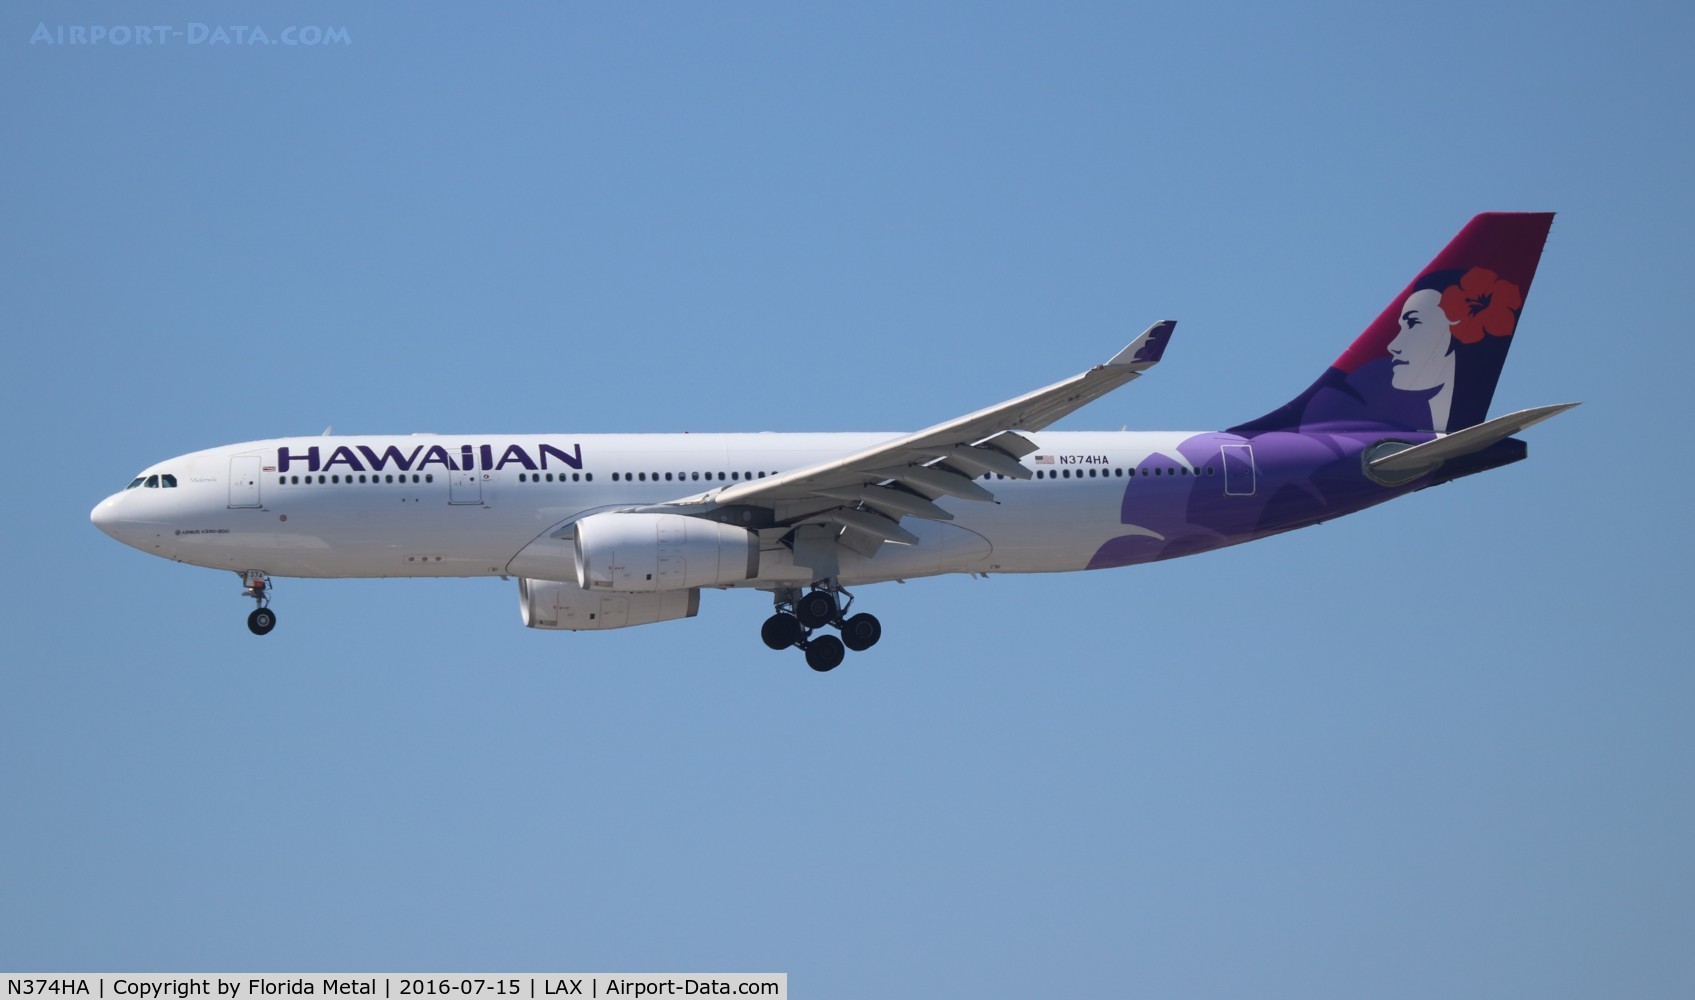 N374HA, 2014 Airbus A330-243 C/N 1565, Hawaiian